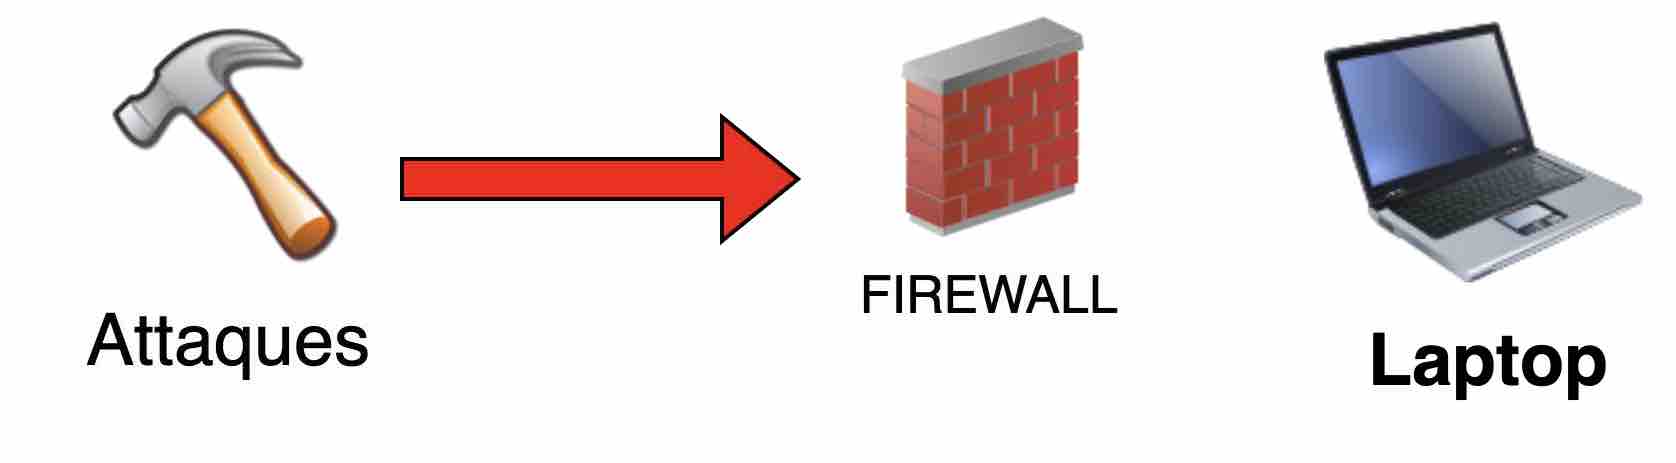 Schéma d'un firewall